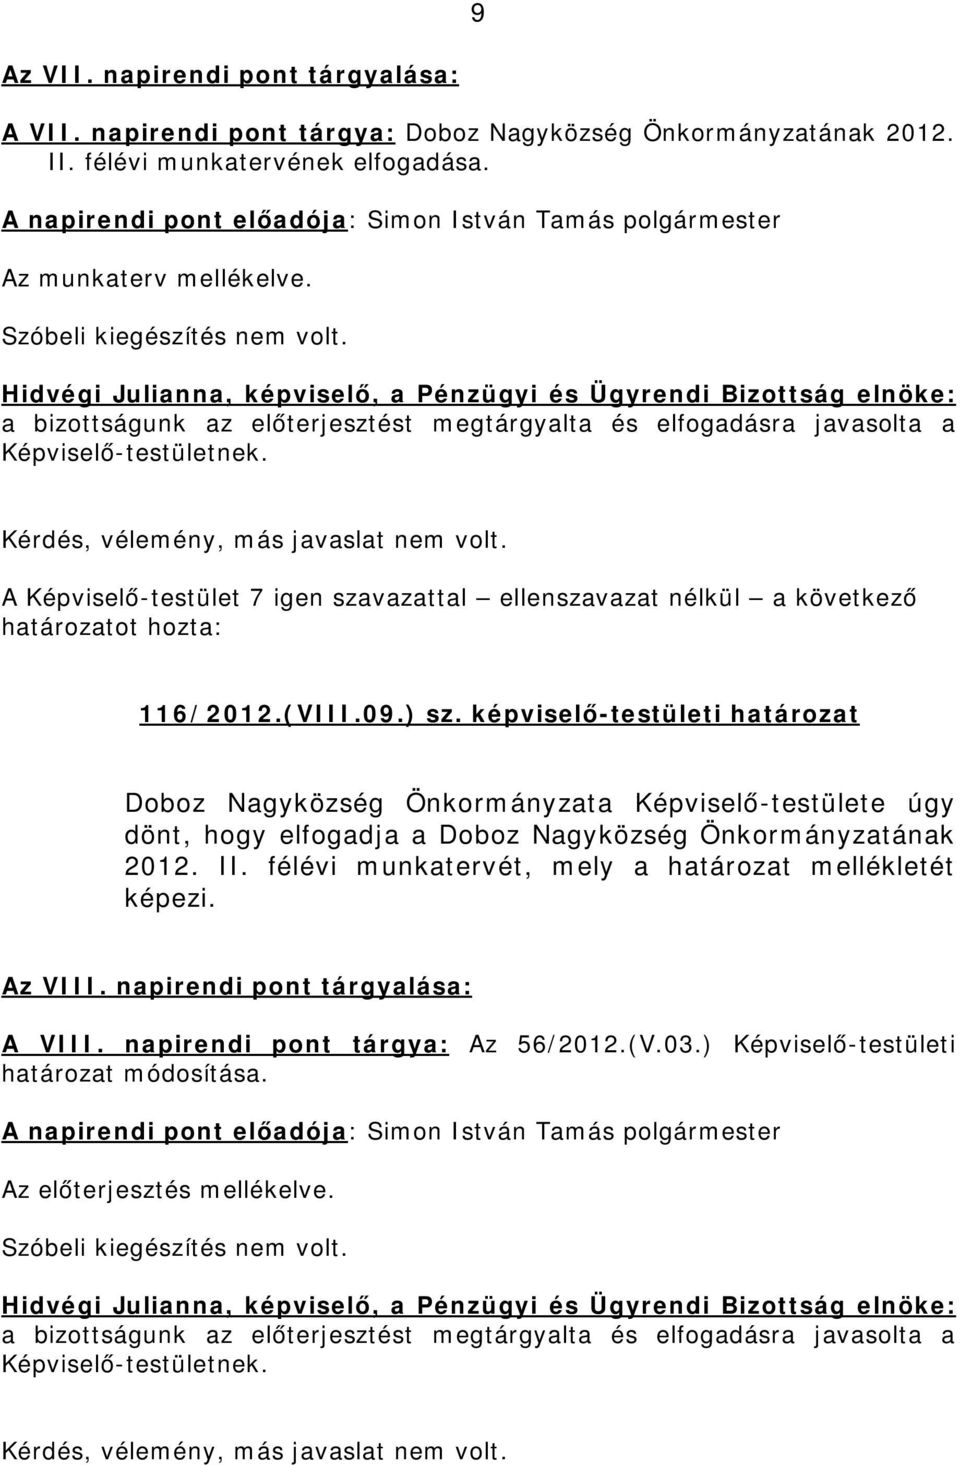 képviselő-testületi határozat Doboz Nagyközség Önkormányzata Képviselő-testülete úgy dönt, hogy elfogadja a Doboz Nagyközség Önkormányzatának 2012.